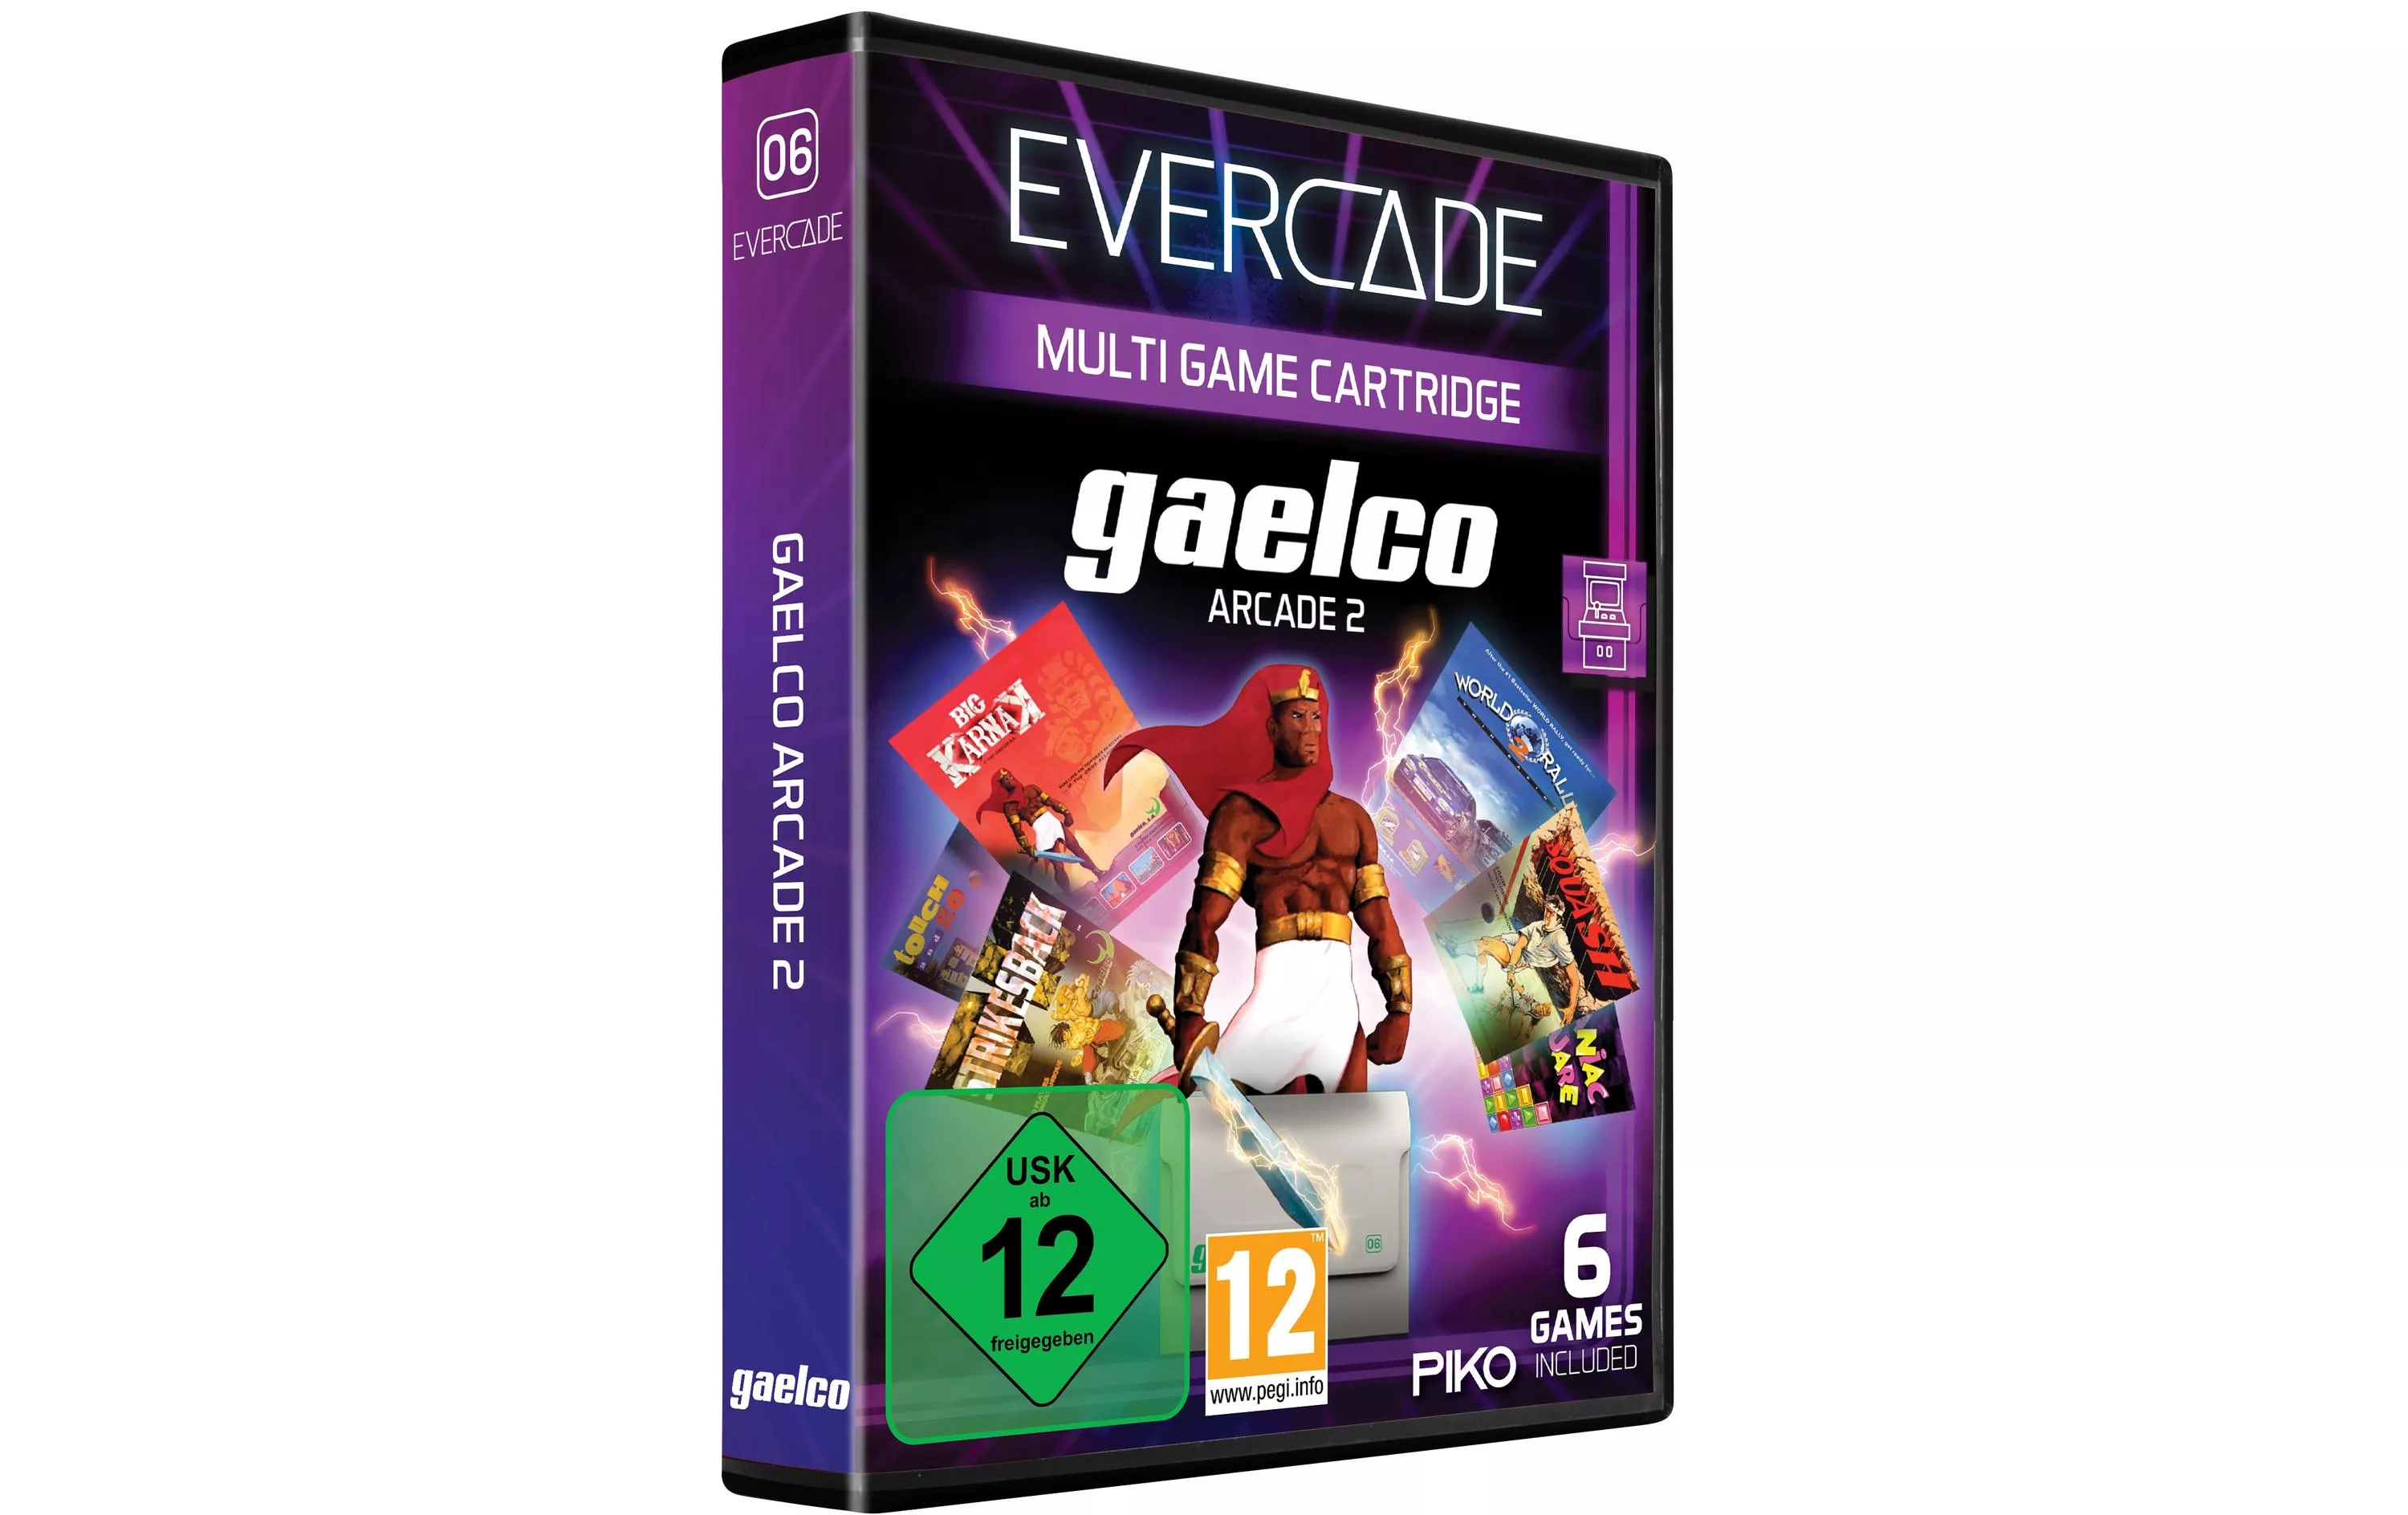 Evercade Gaelco Arcade 2